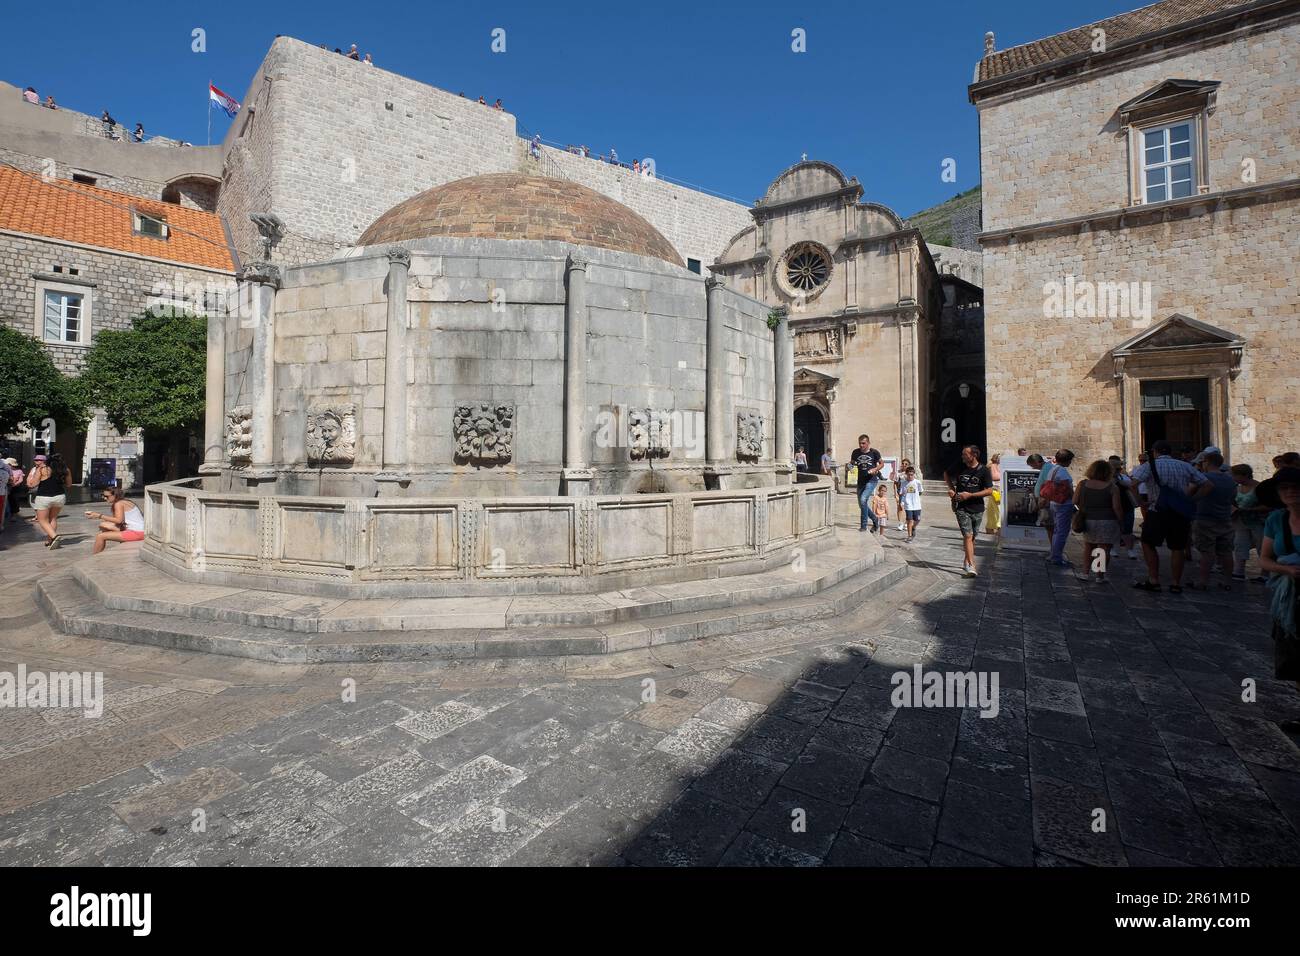 Grande Fontana di Onofrio in Piazza Dubrovnik, Croazia, Europa Foto Stock